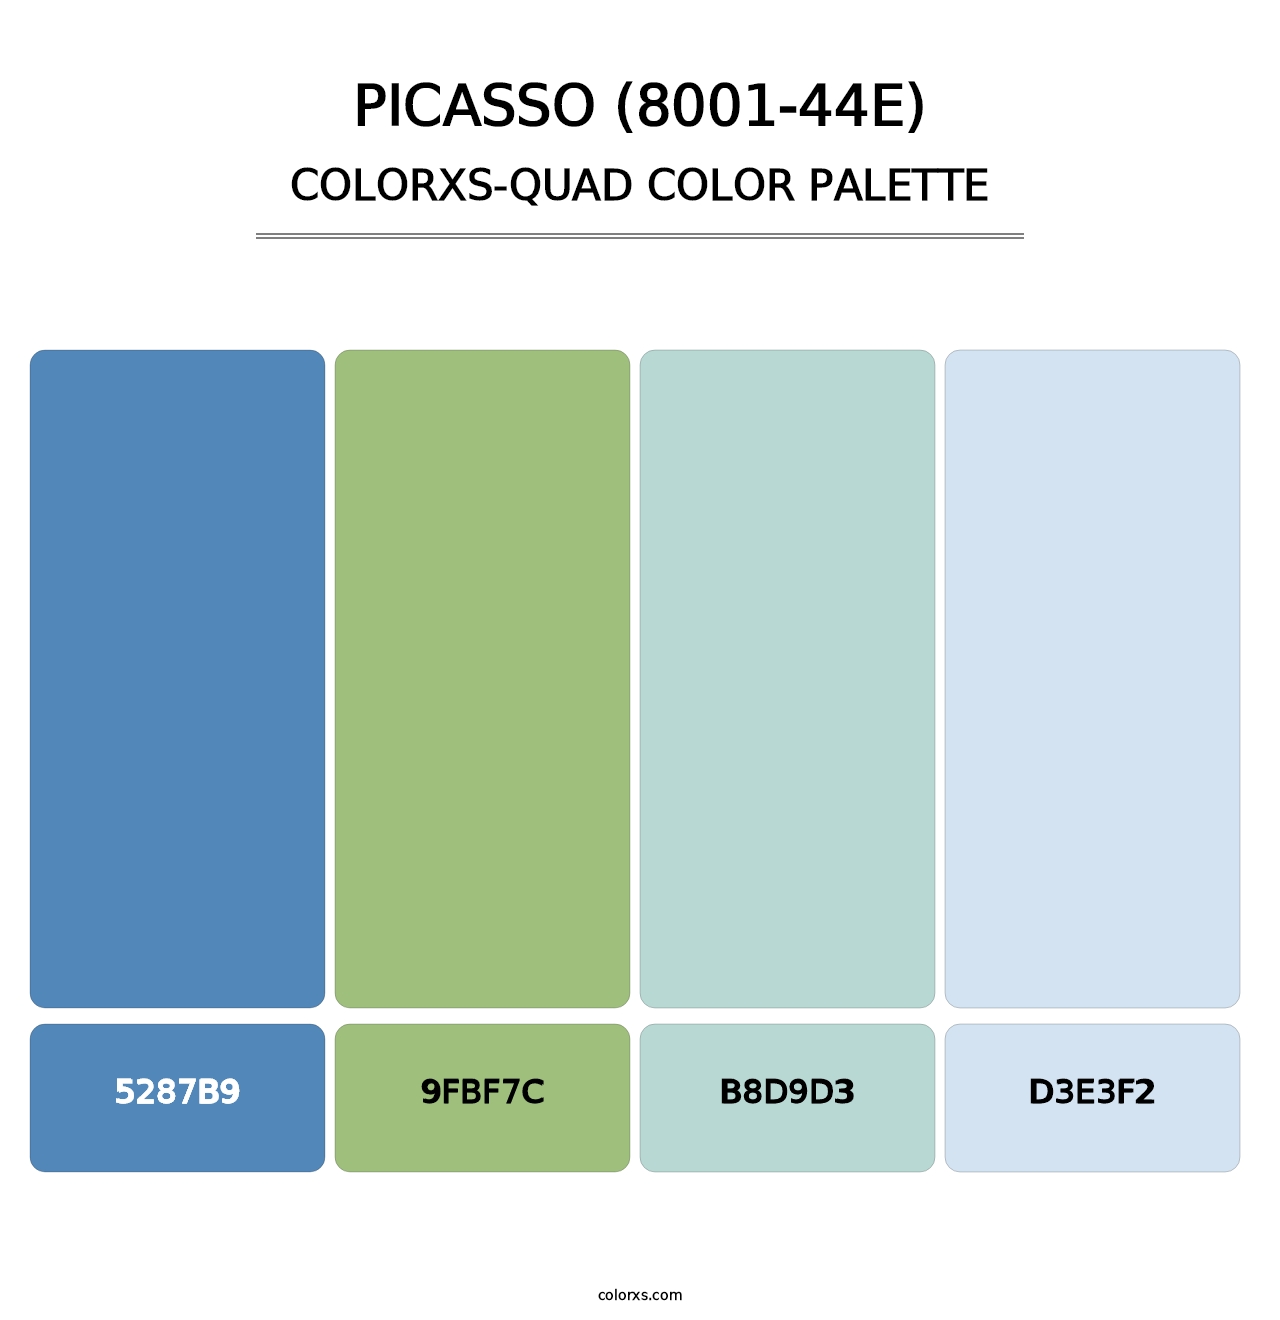 Picasso (8001-44E) - Colorxs Quad Palette